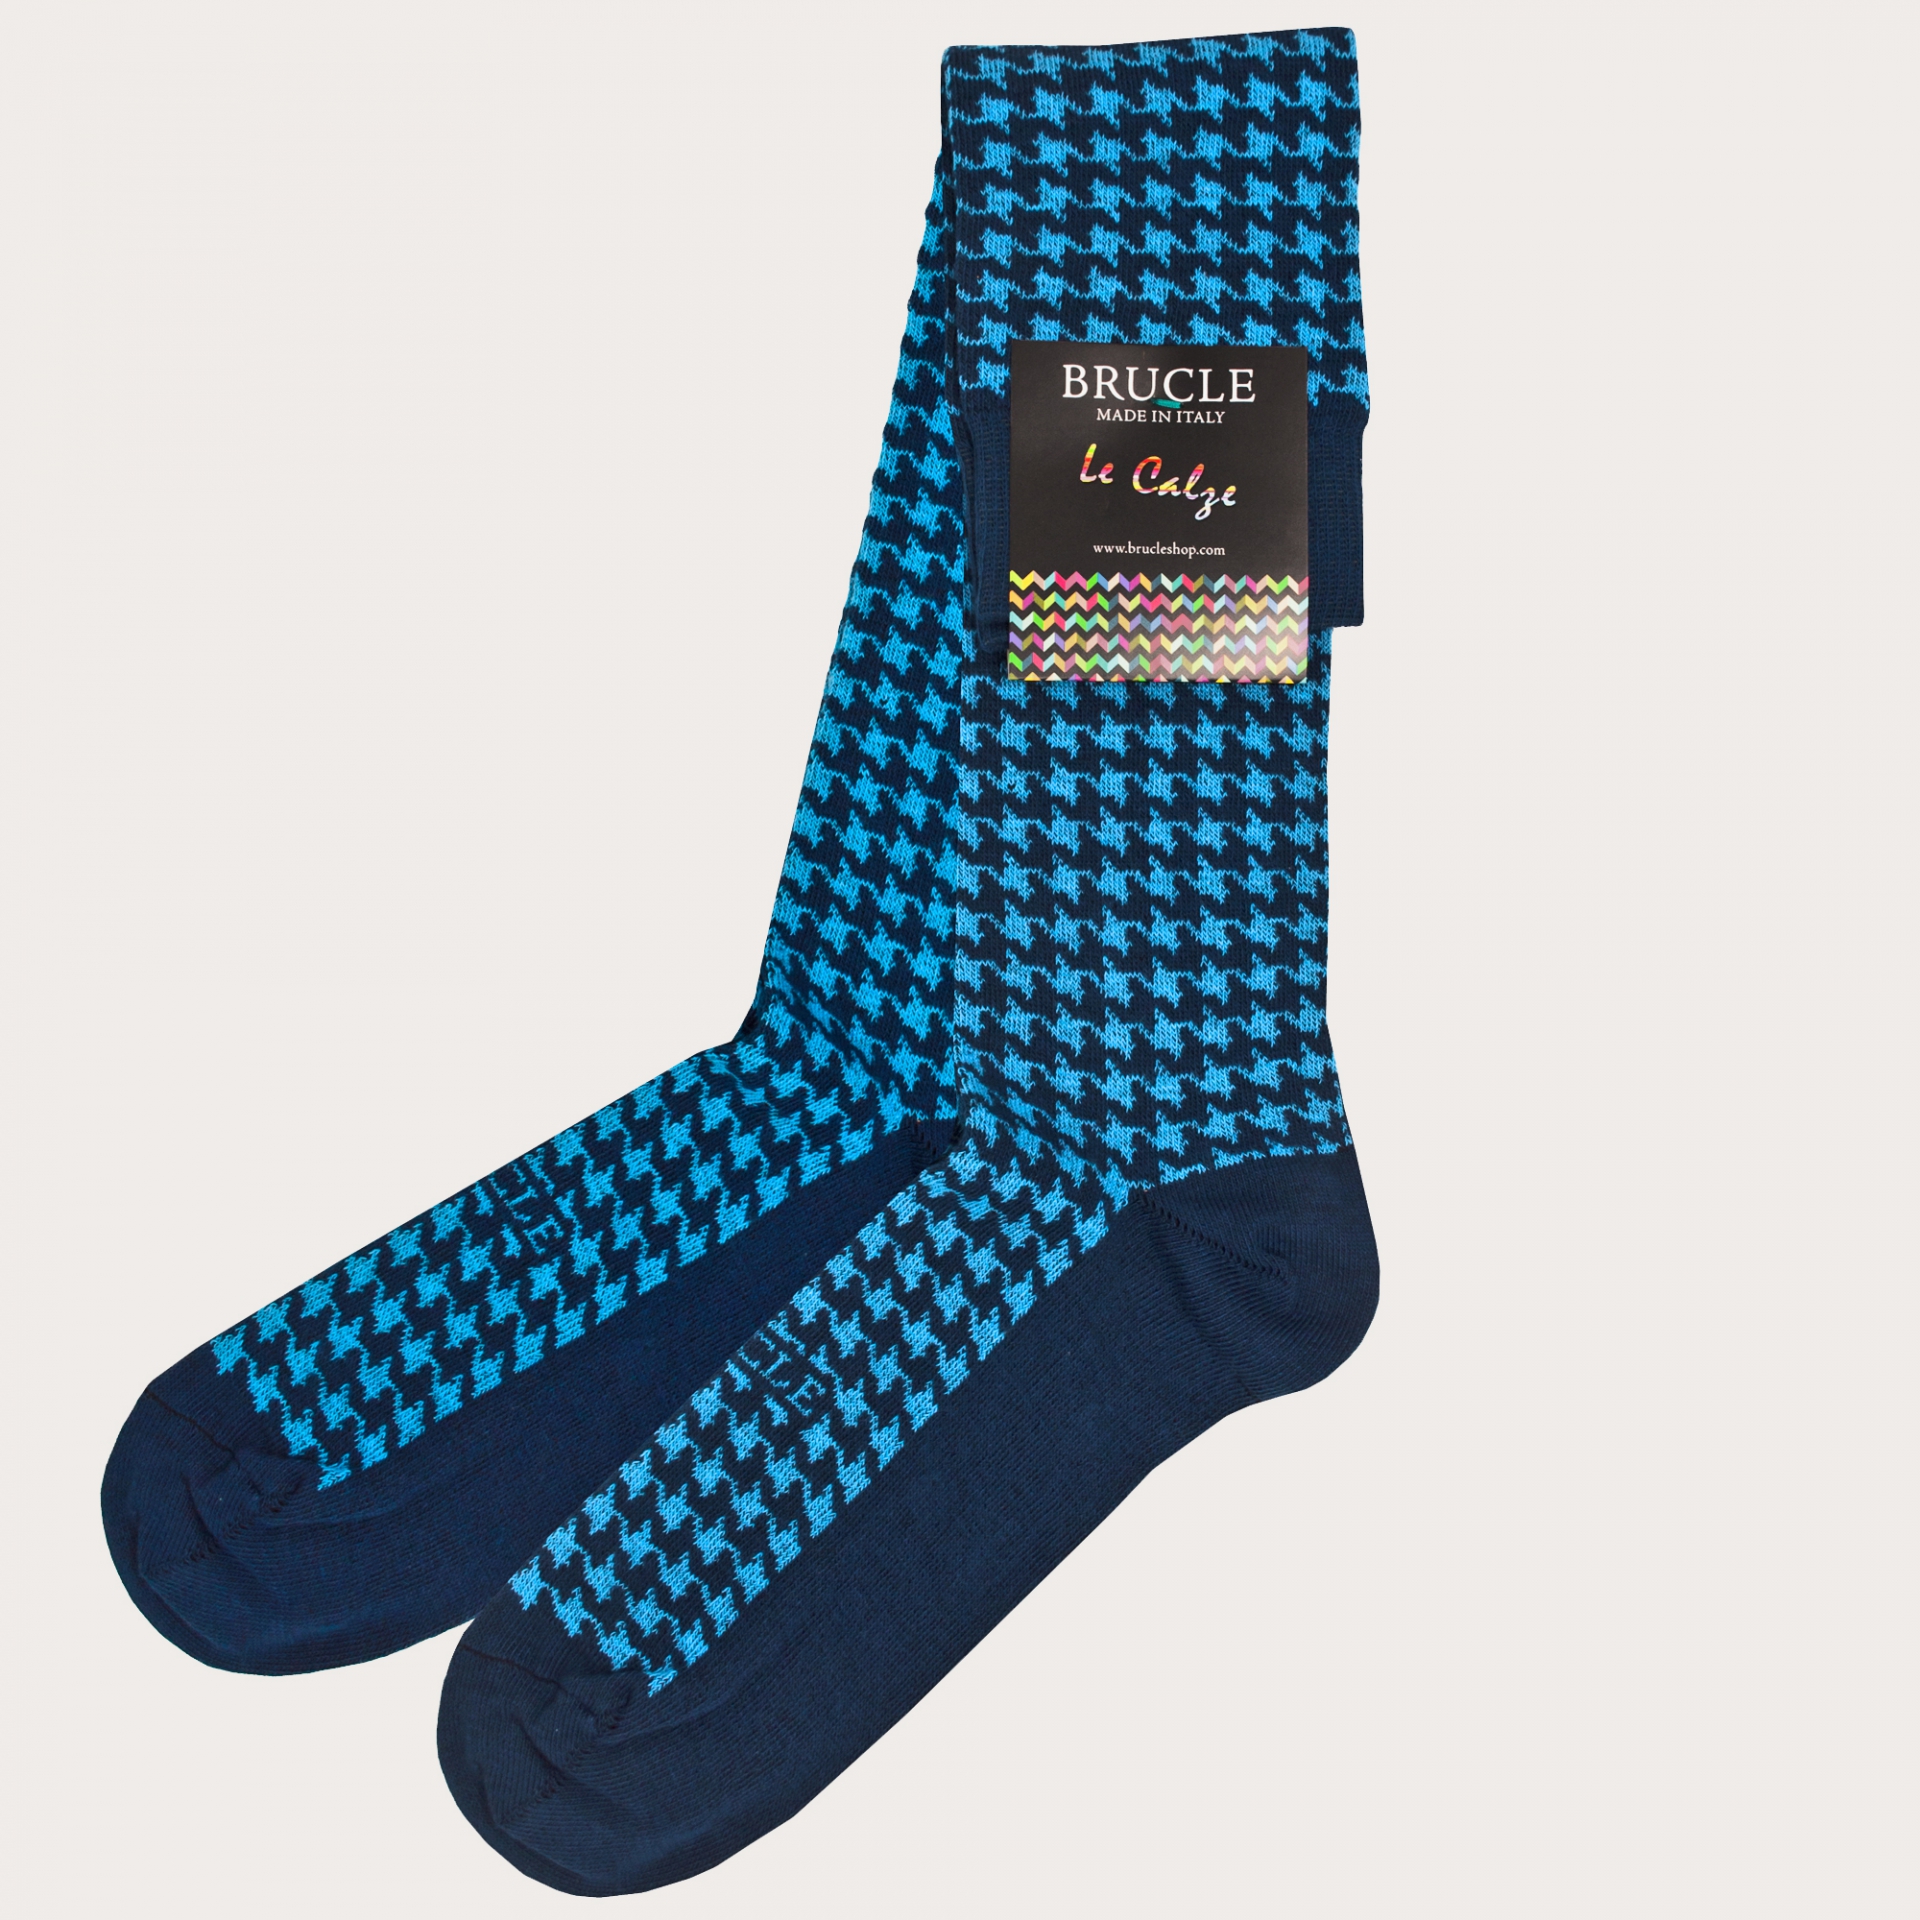 BRUCLE Warm socks, blue pied de poule